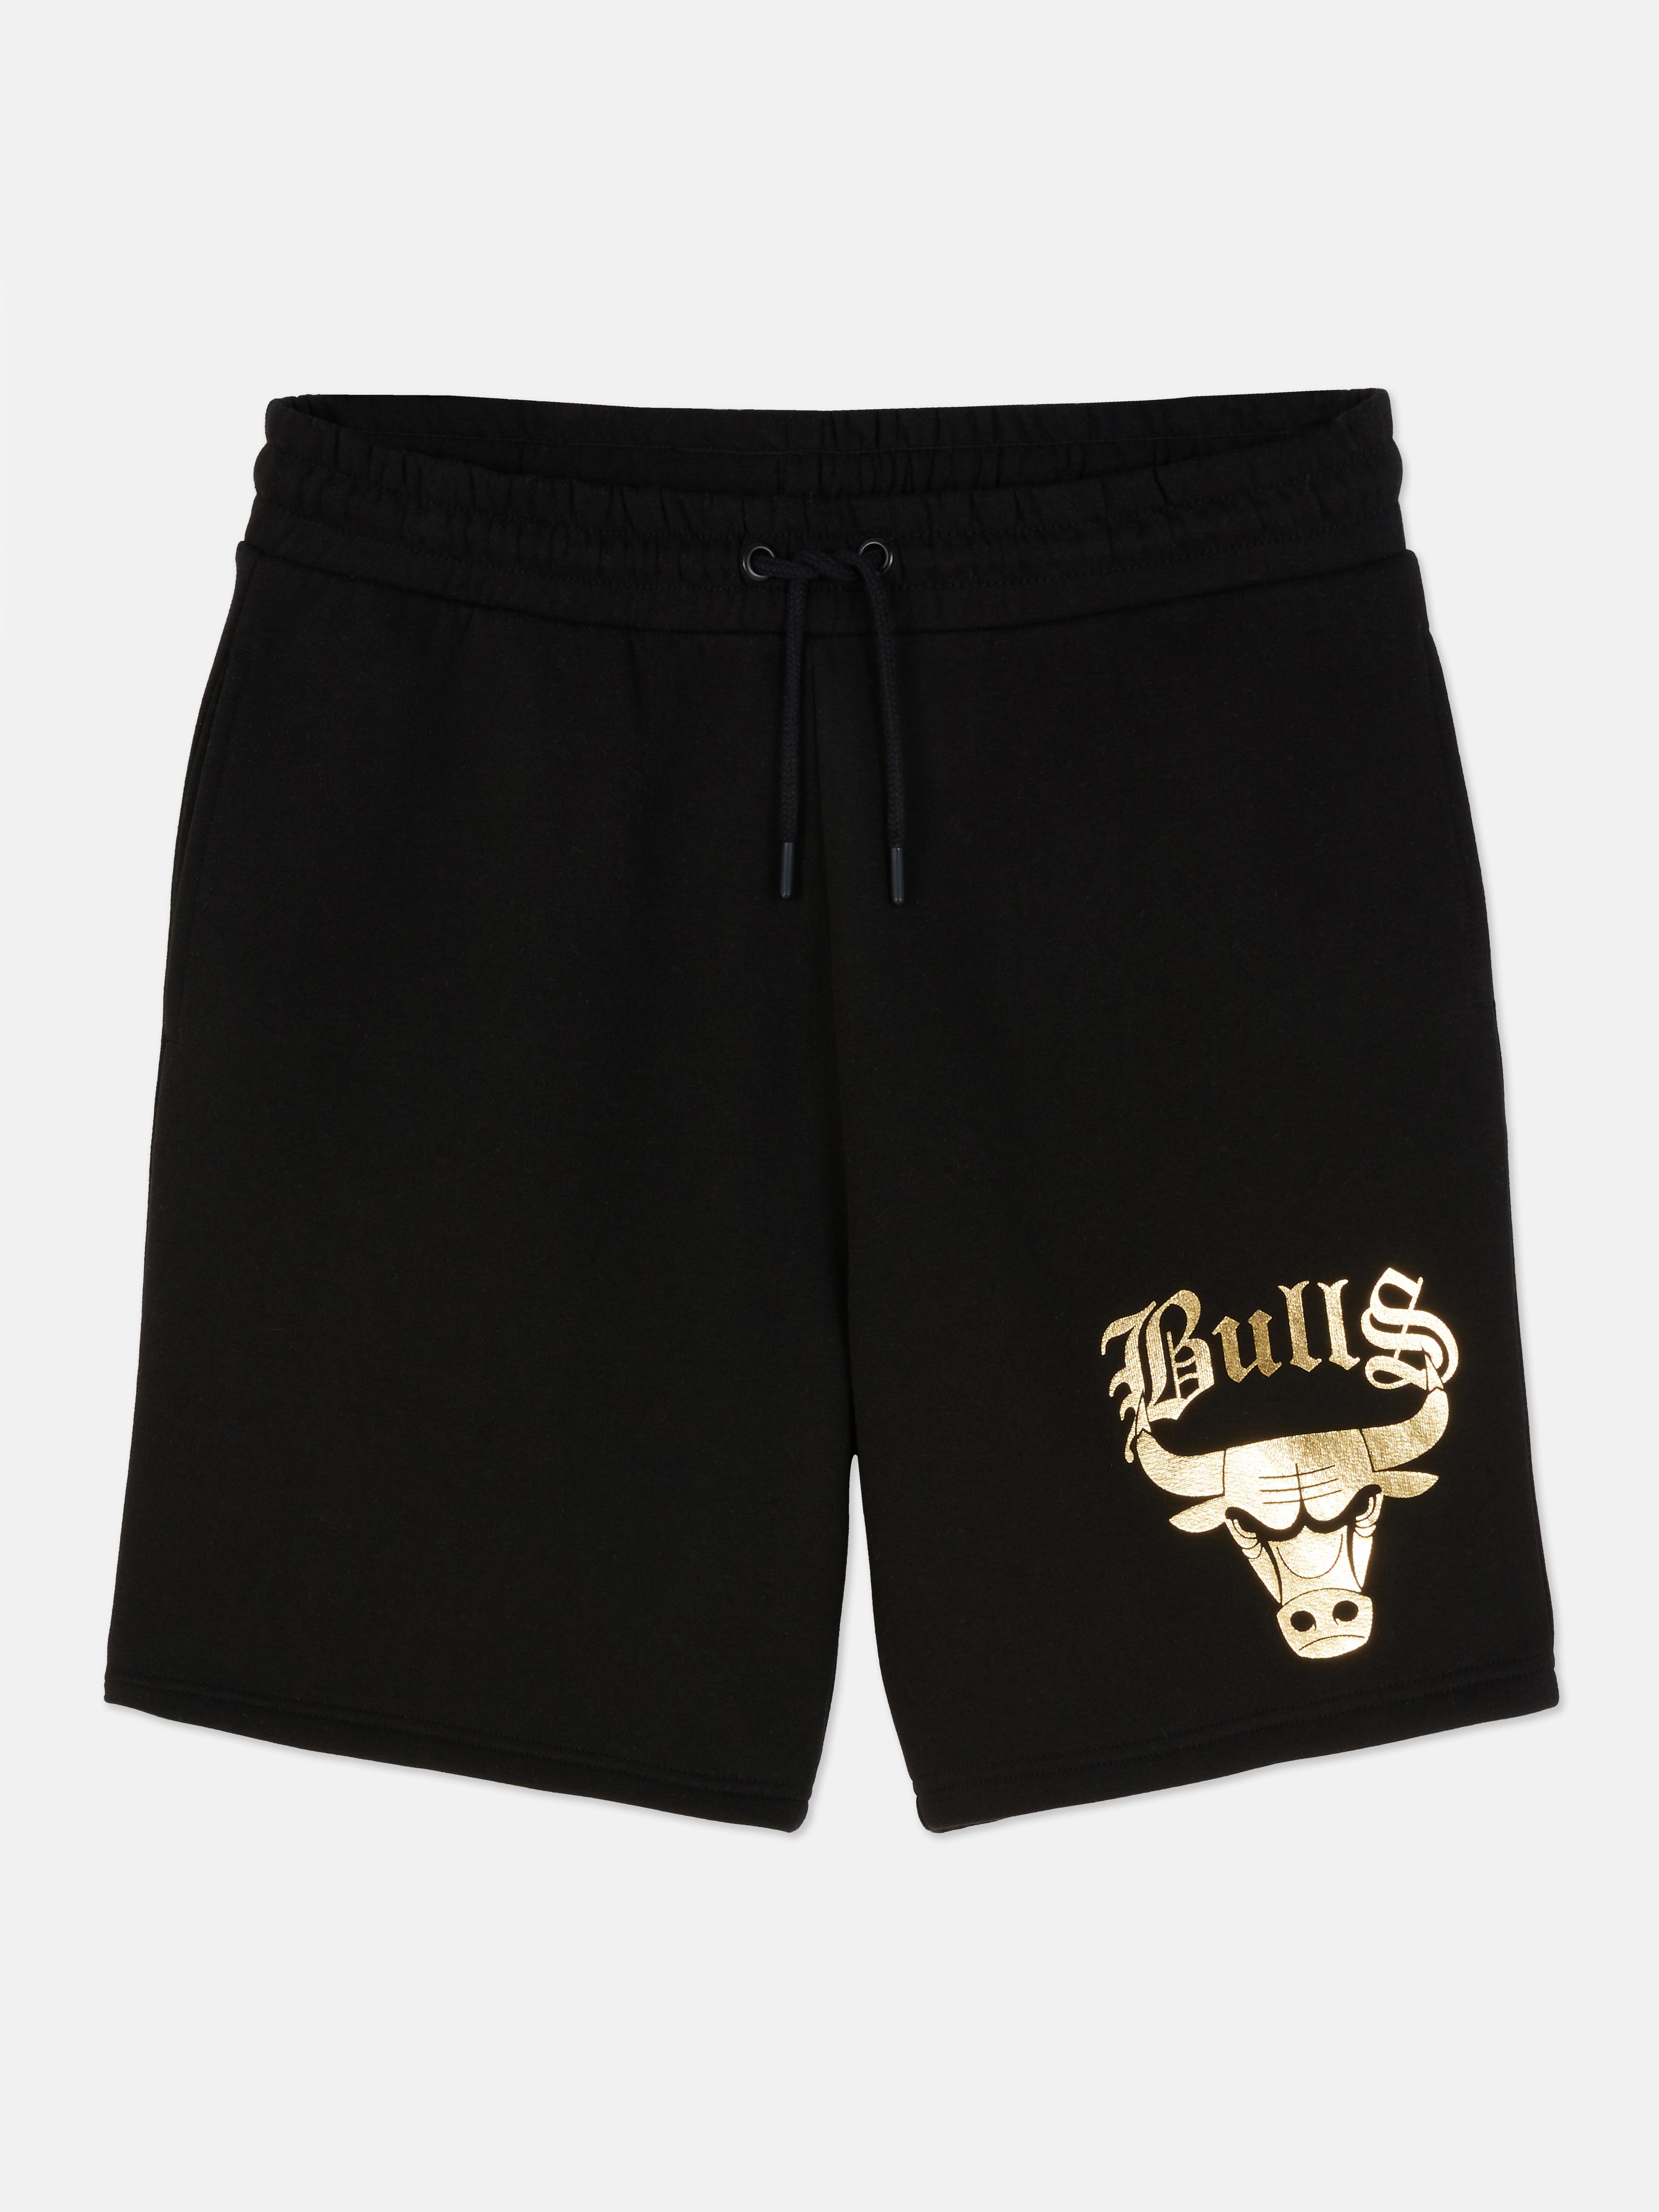 NBA Chicago Bulls Drawstring Shorts